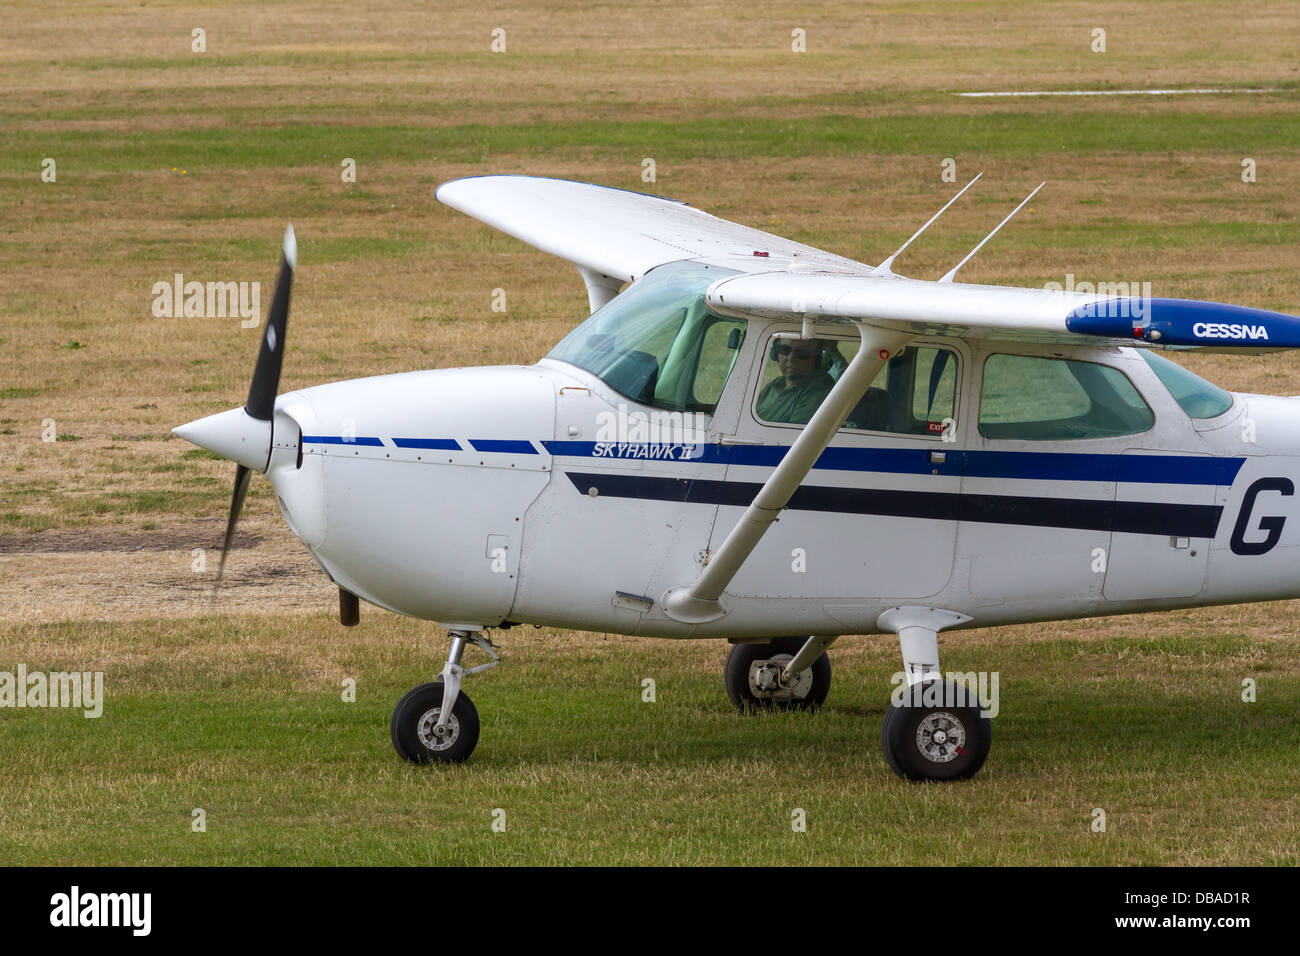 Avionetas Cessna de rodadura en el Aeródromo de ciudad Aeropuerto antiguamente Barton aeródromo Foto de stock